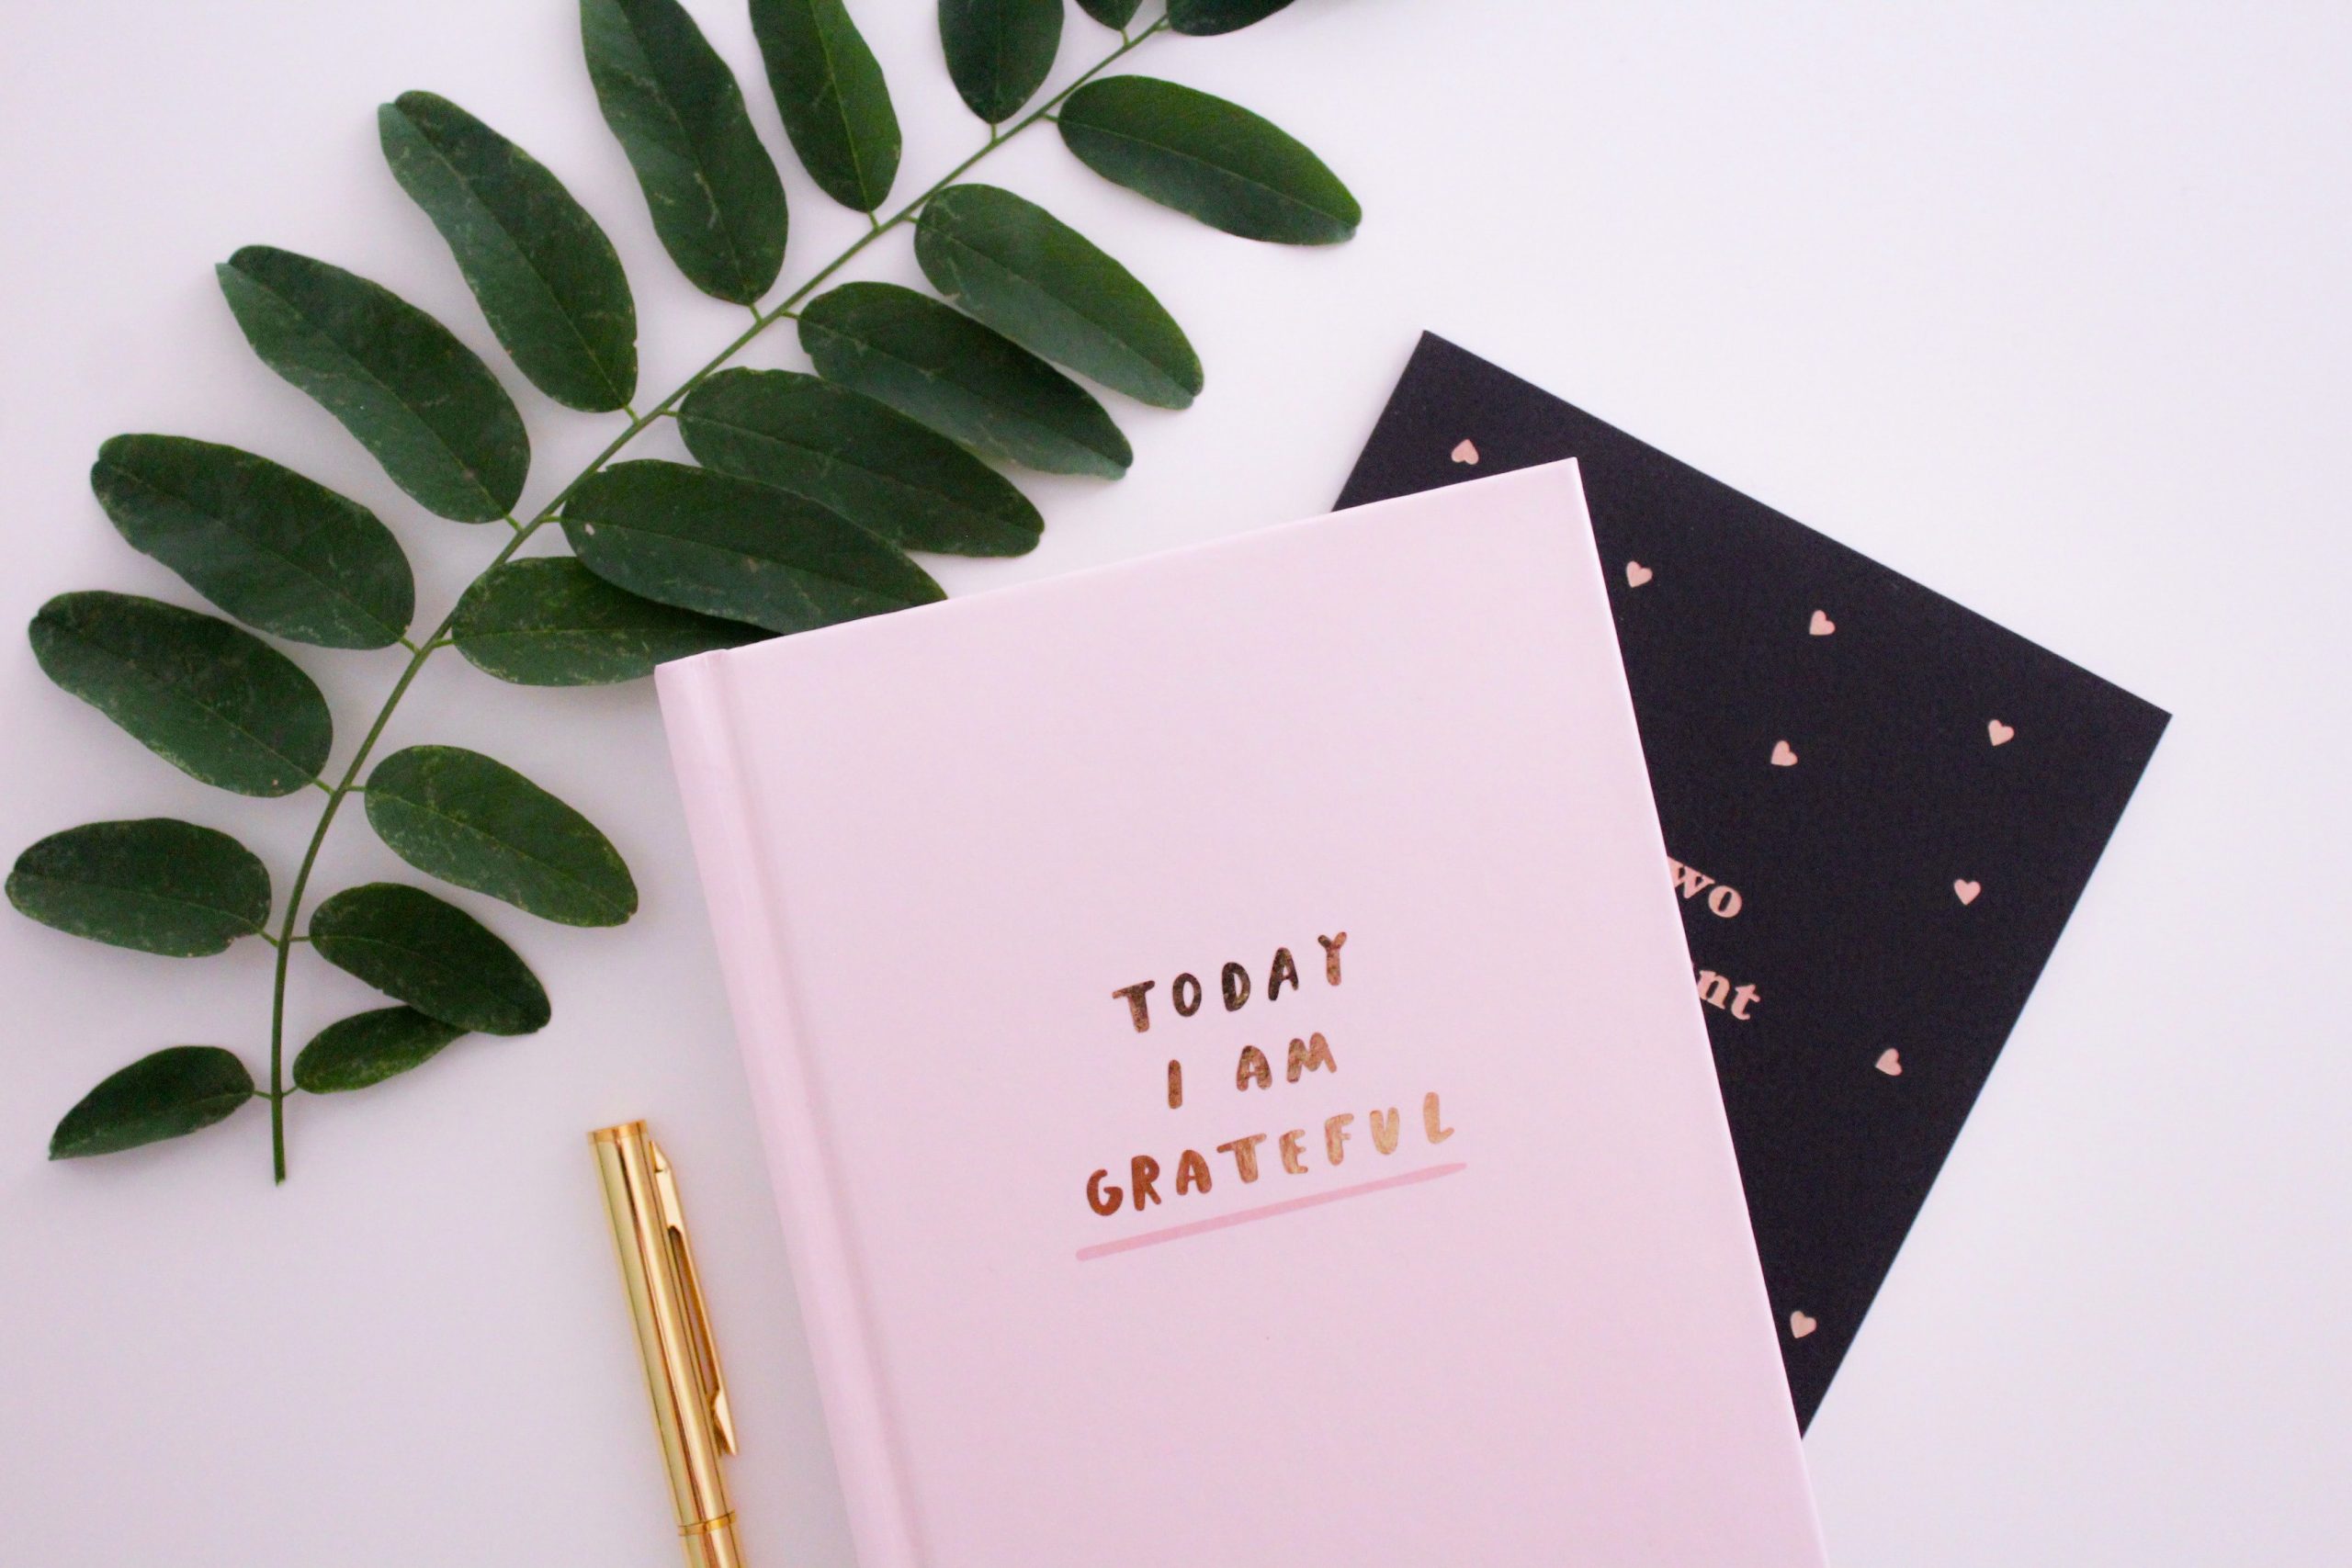 Grateful journal - make monday suck less 